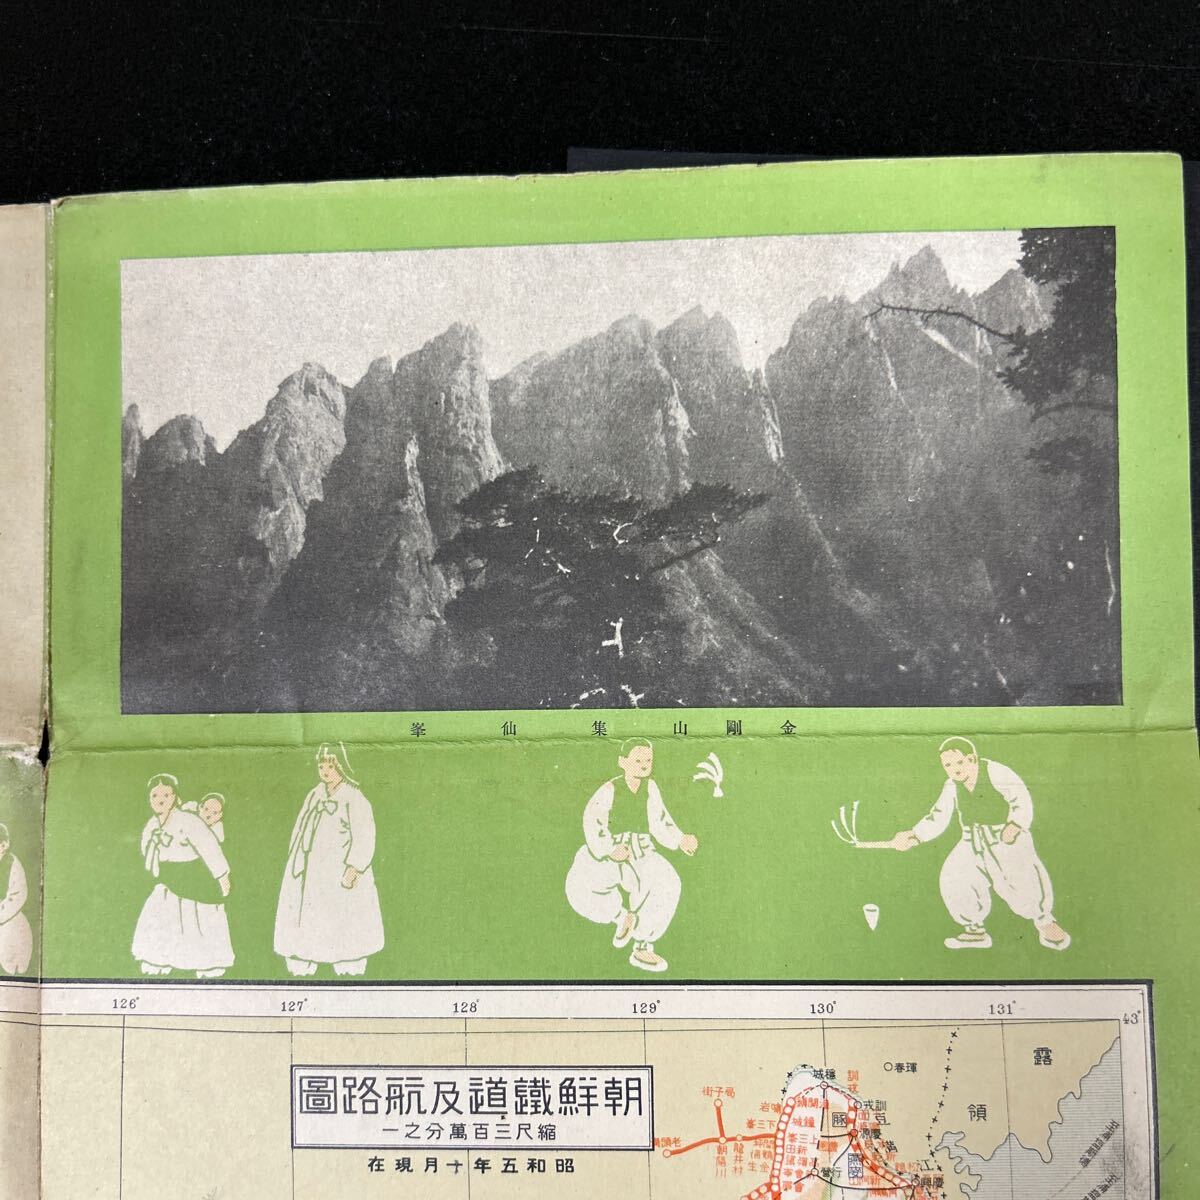 戦前 朝鮮 朝鮮旅行案内 小冊子 朝鮮総督府鉄道局 大判 朝鮮半島地図 写真多数 鉄道路線 韓国、満州の画像7